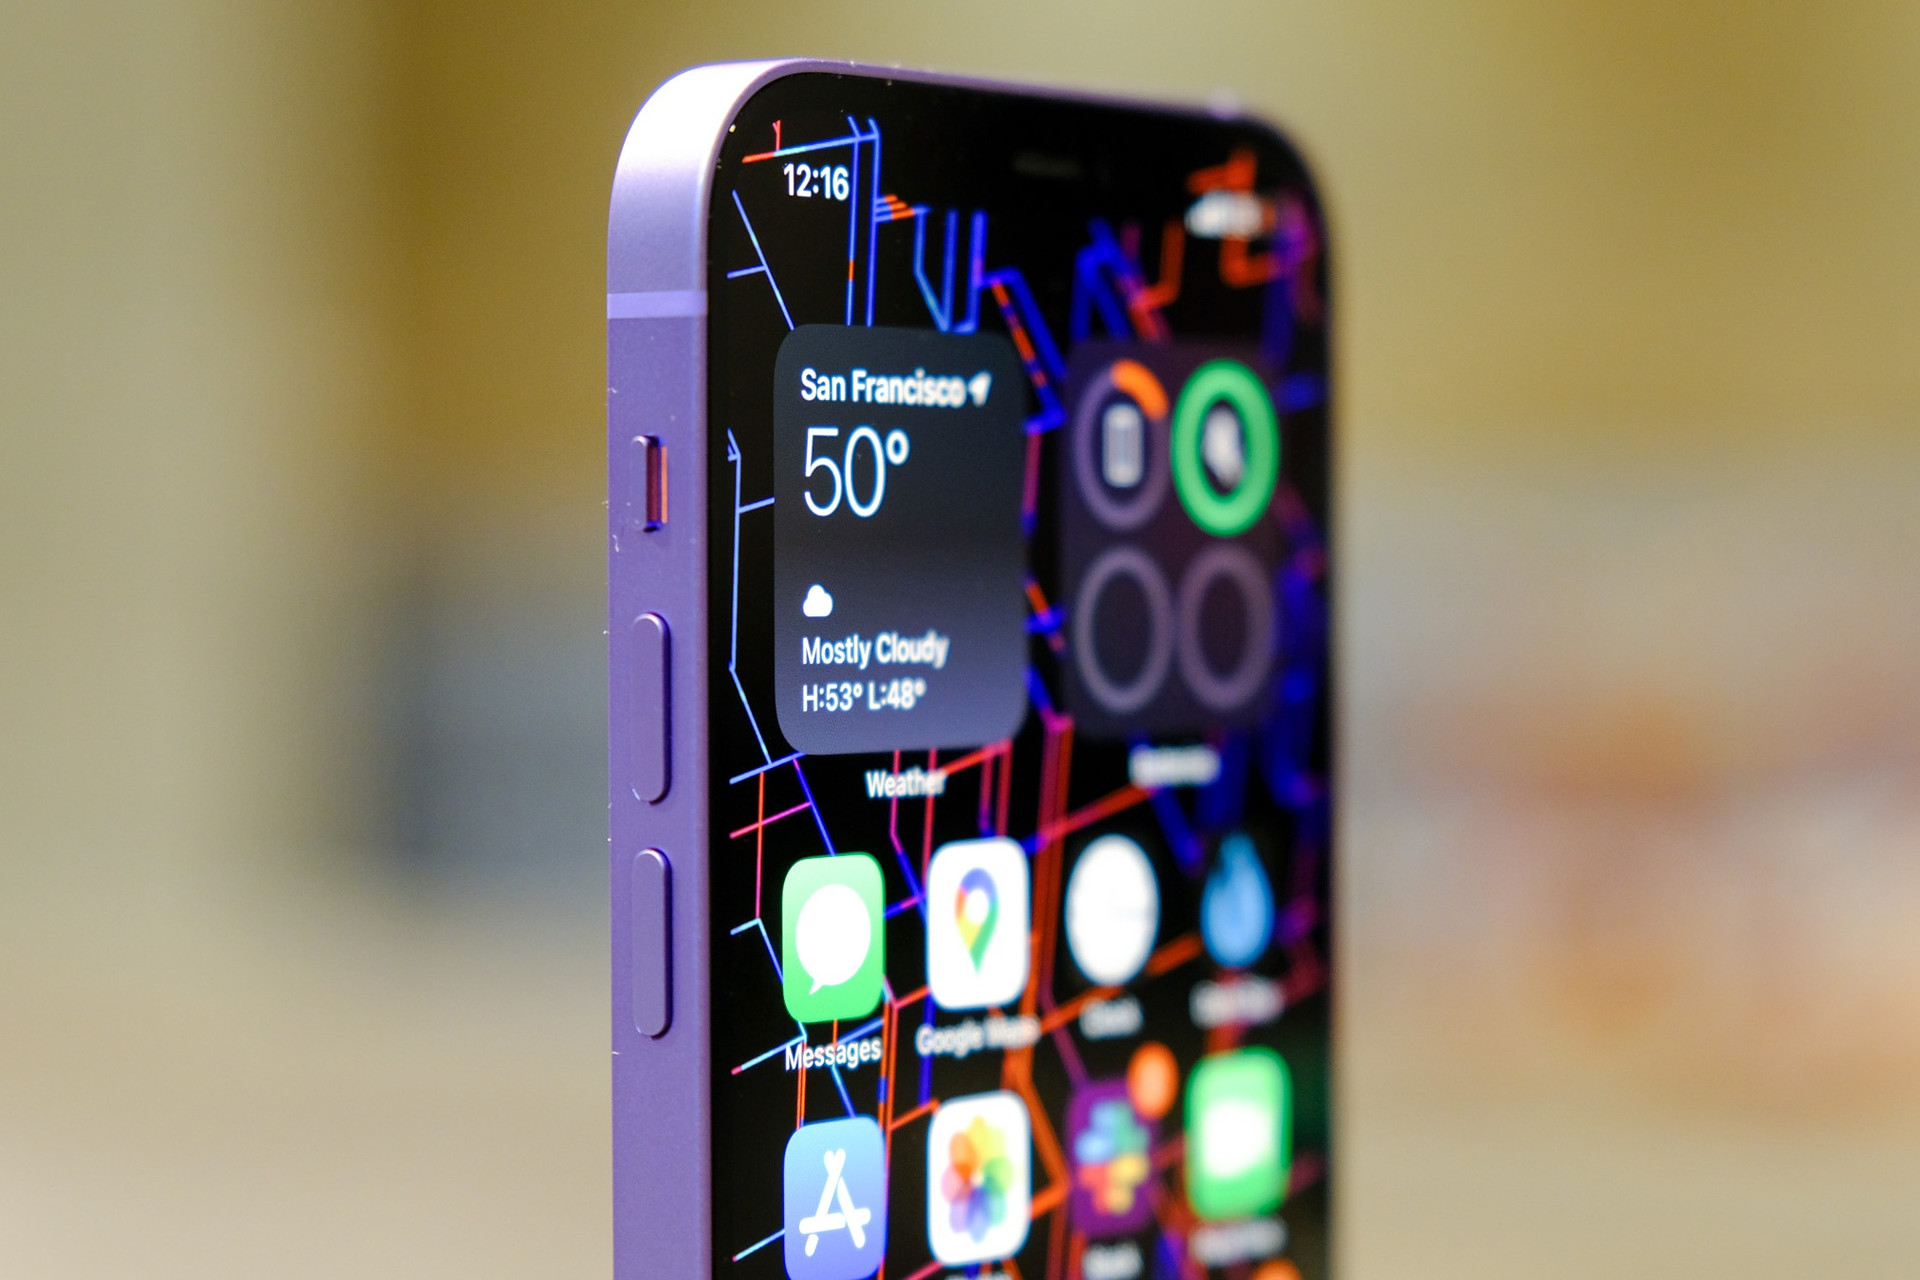 Tại sự kiện Spring Loaded diễn ra vào 0h ngày 21/4 (giờ Việt Nam), Apple đã giới thiệu hàng loạt sản phẩm mới, trong đó có chiếc iPhone 12 phiên bản màu tím. So với phiên bản iPhone 12 đã ra mắt trước đó, mẫu máy này không có bất cứ khác biệt nào về thiết kế hay thông số cấu hình.